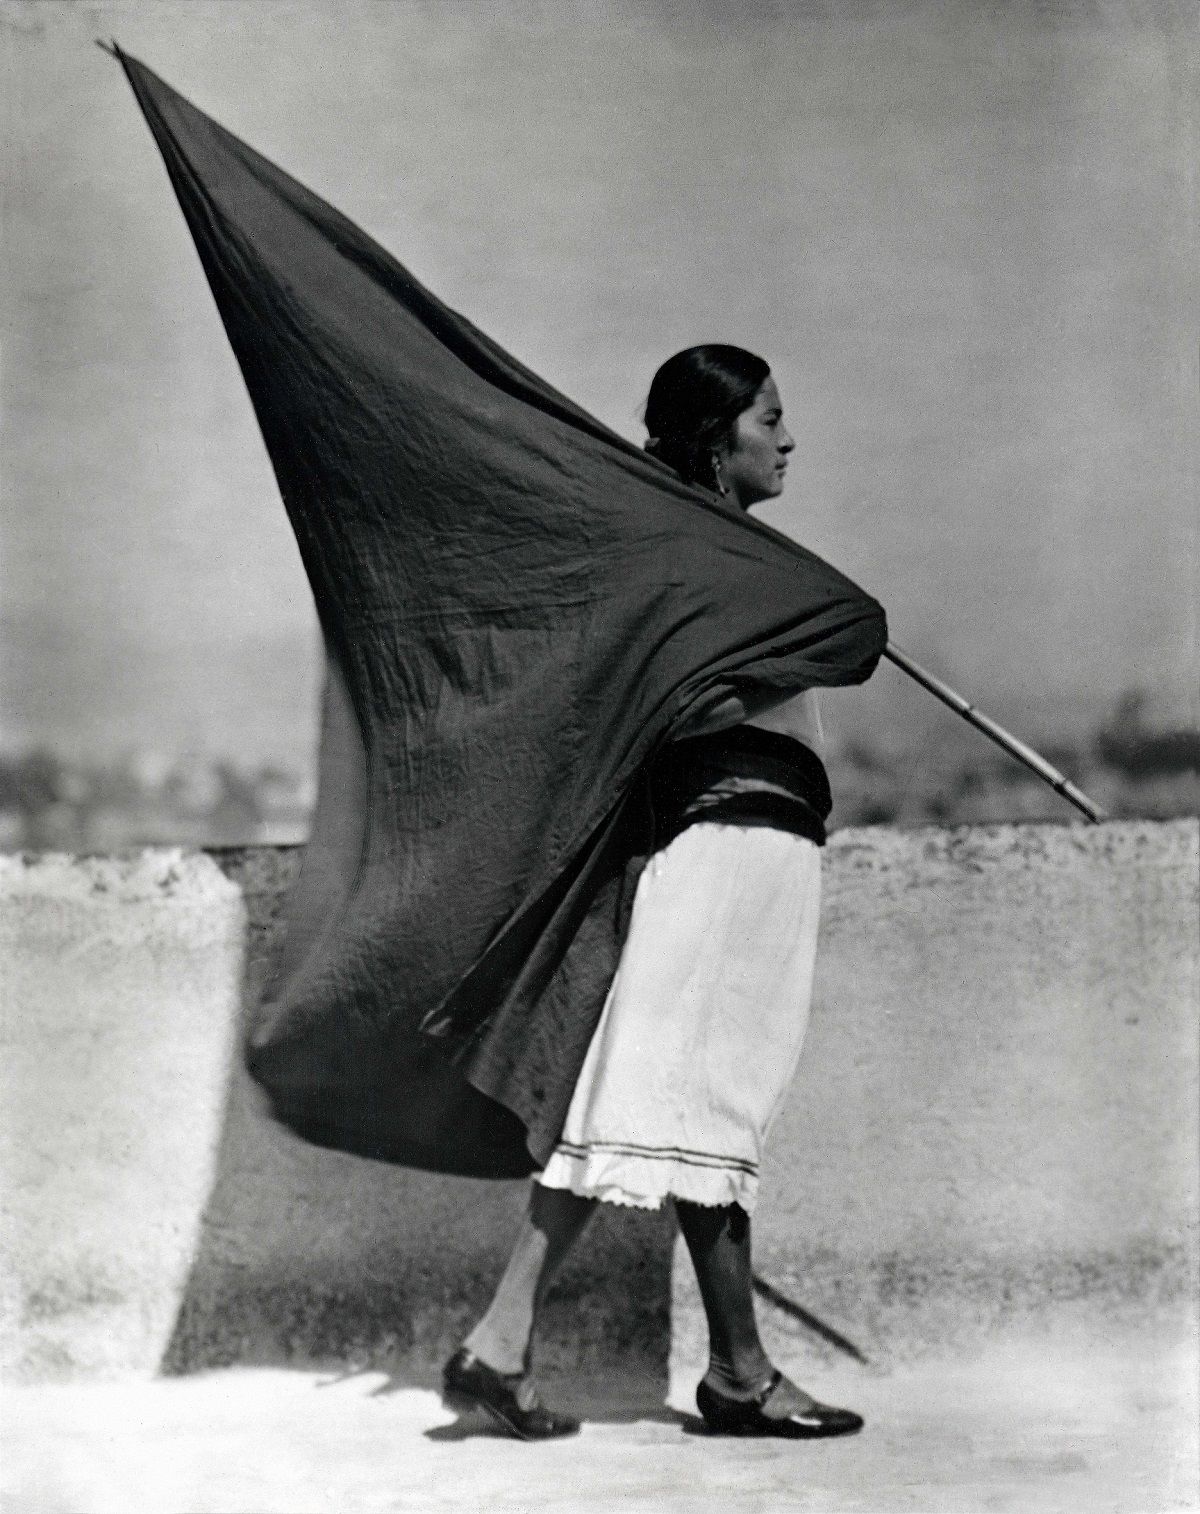 Mujer con bandera, c. 1928, Ciudad de México. © TINA MODOTTI/CORTESÍA: GALERIE BILDERWELT, REINHARD SCHULTZ